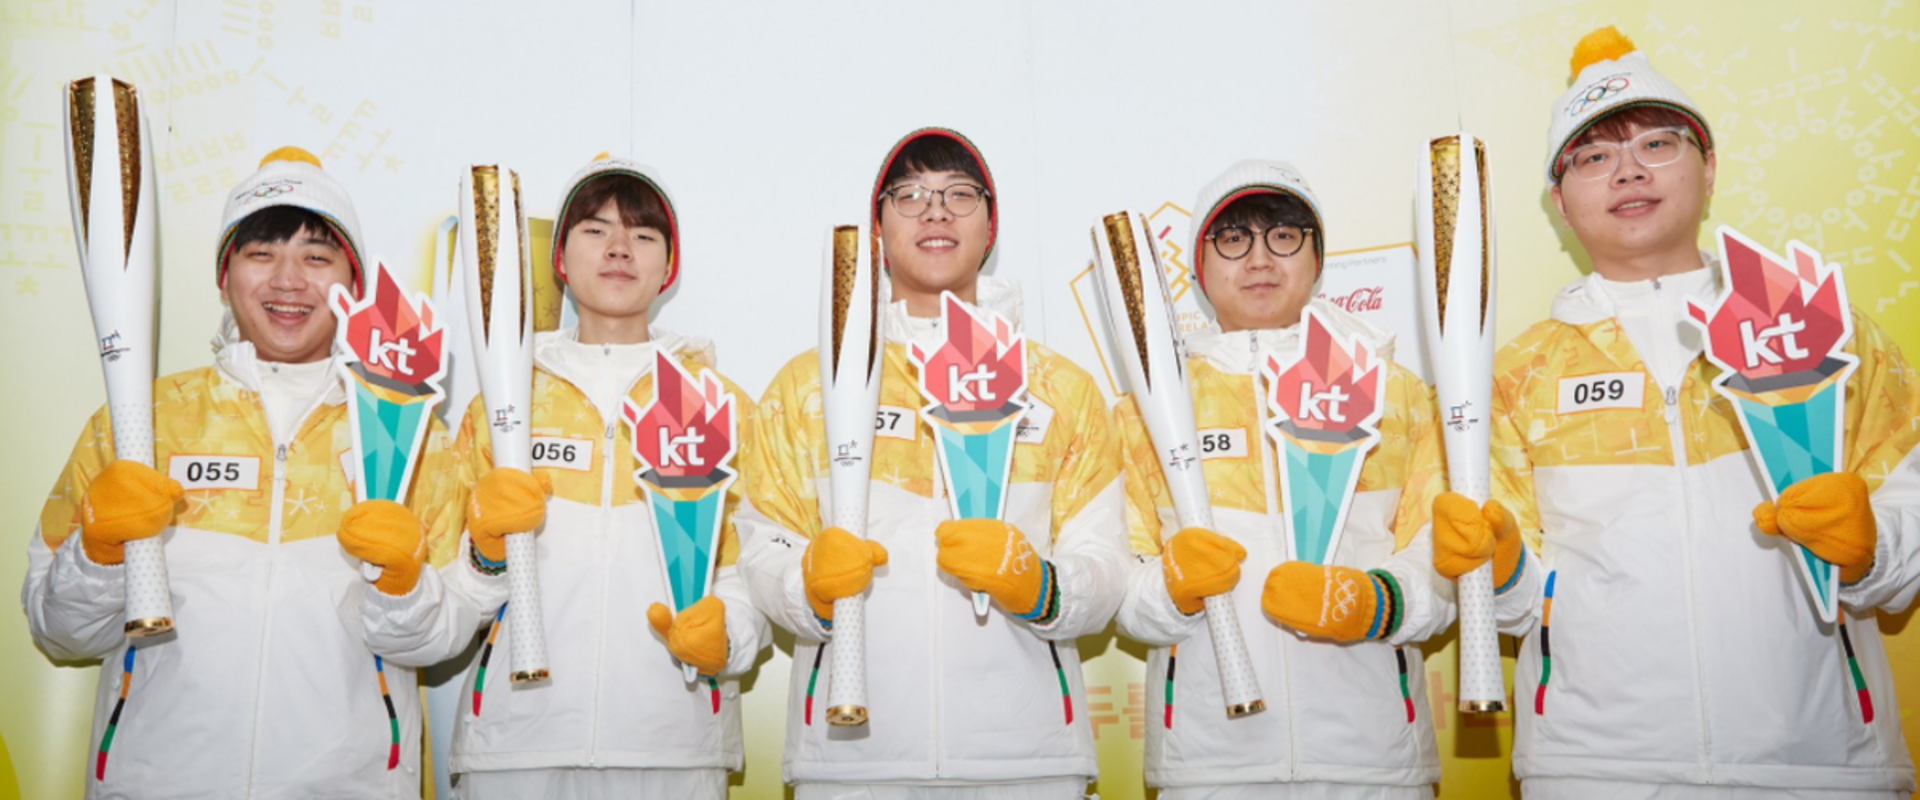 A világhírű koreai csapat egy lépéssel közelebb hozta az e-sportot az olimpiához